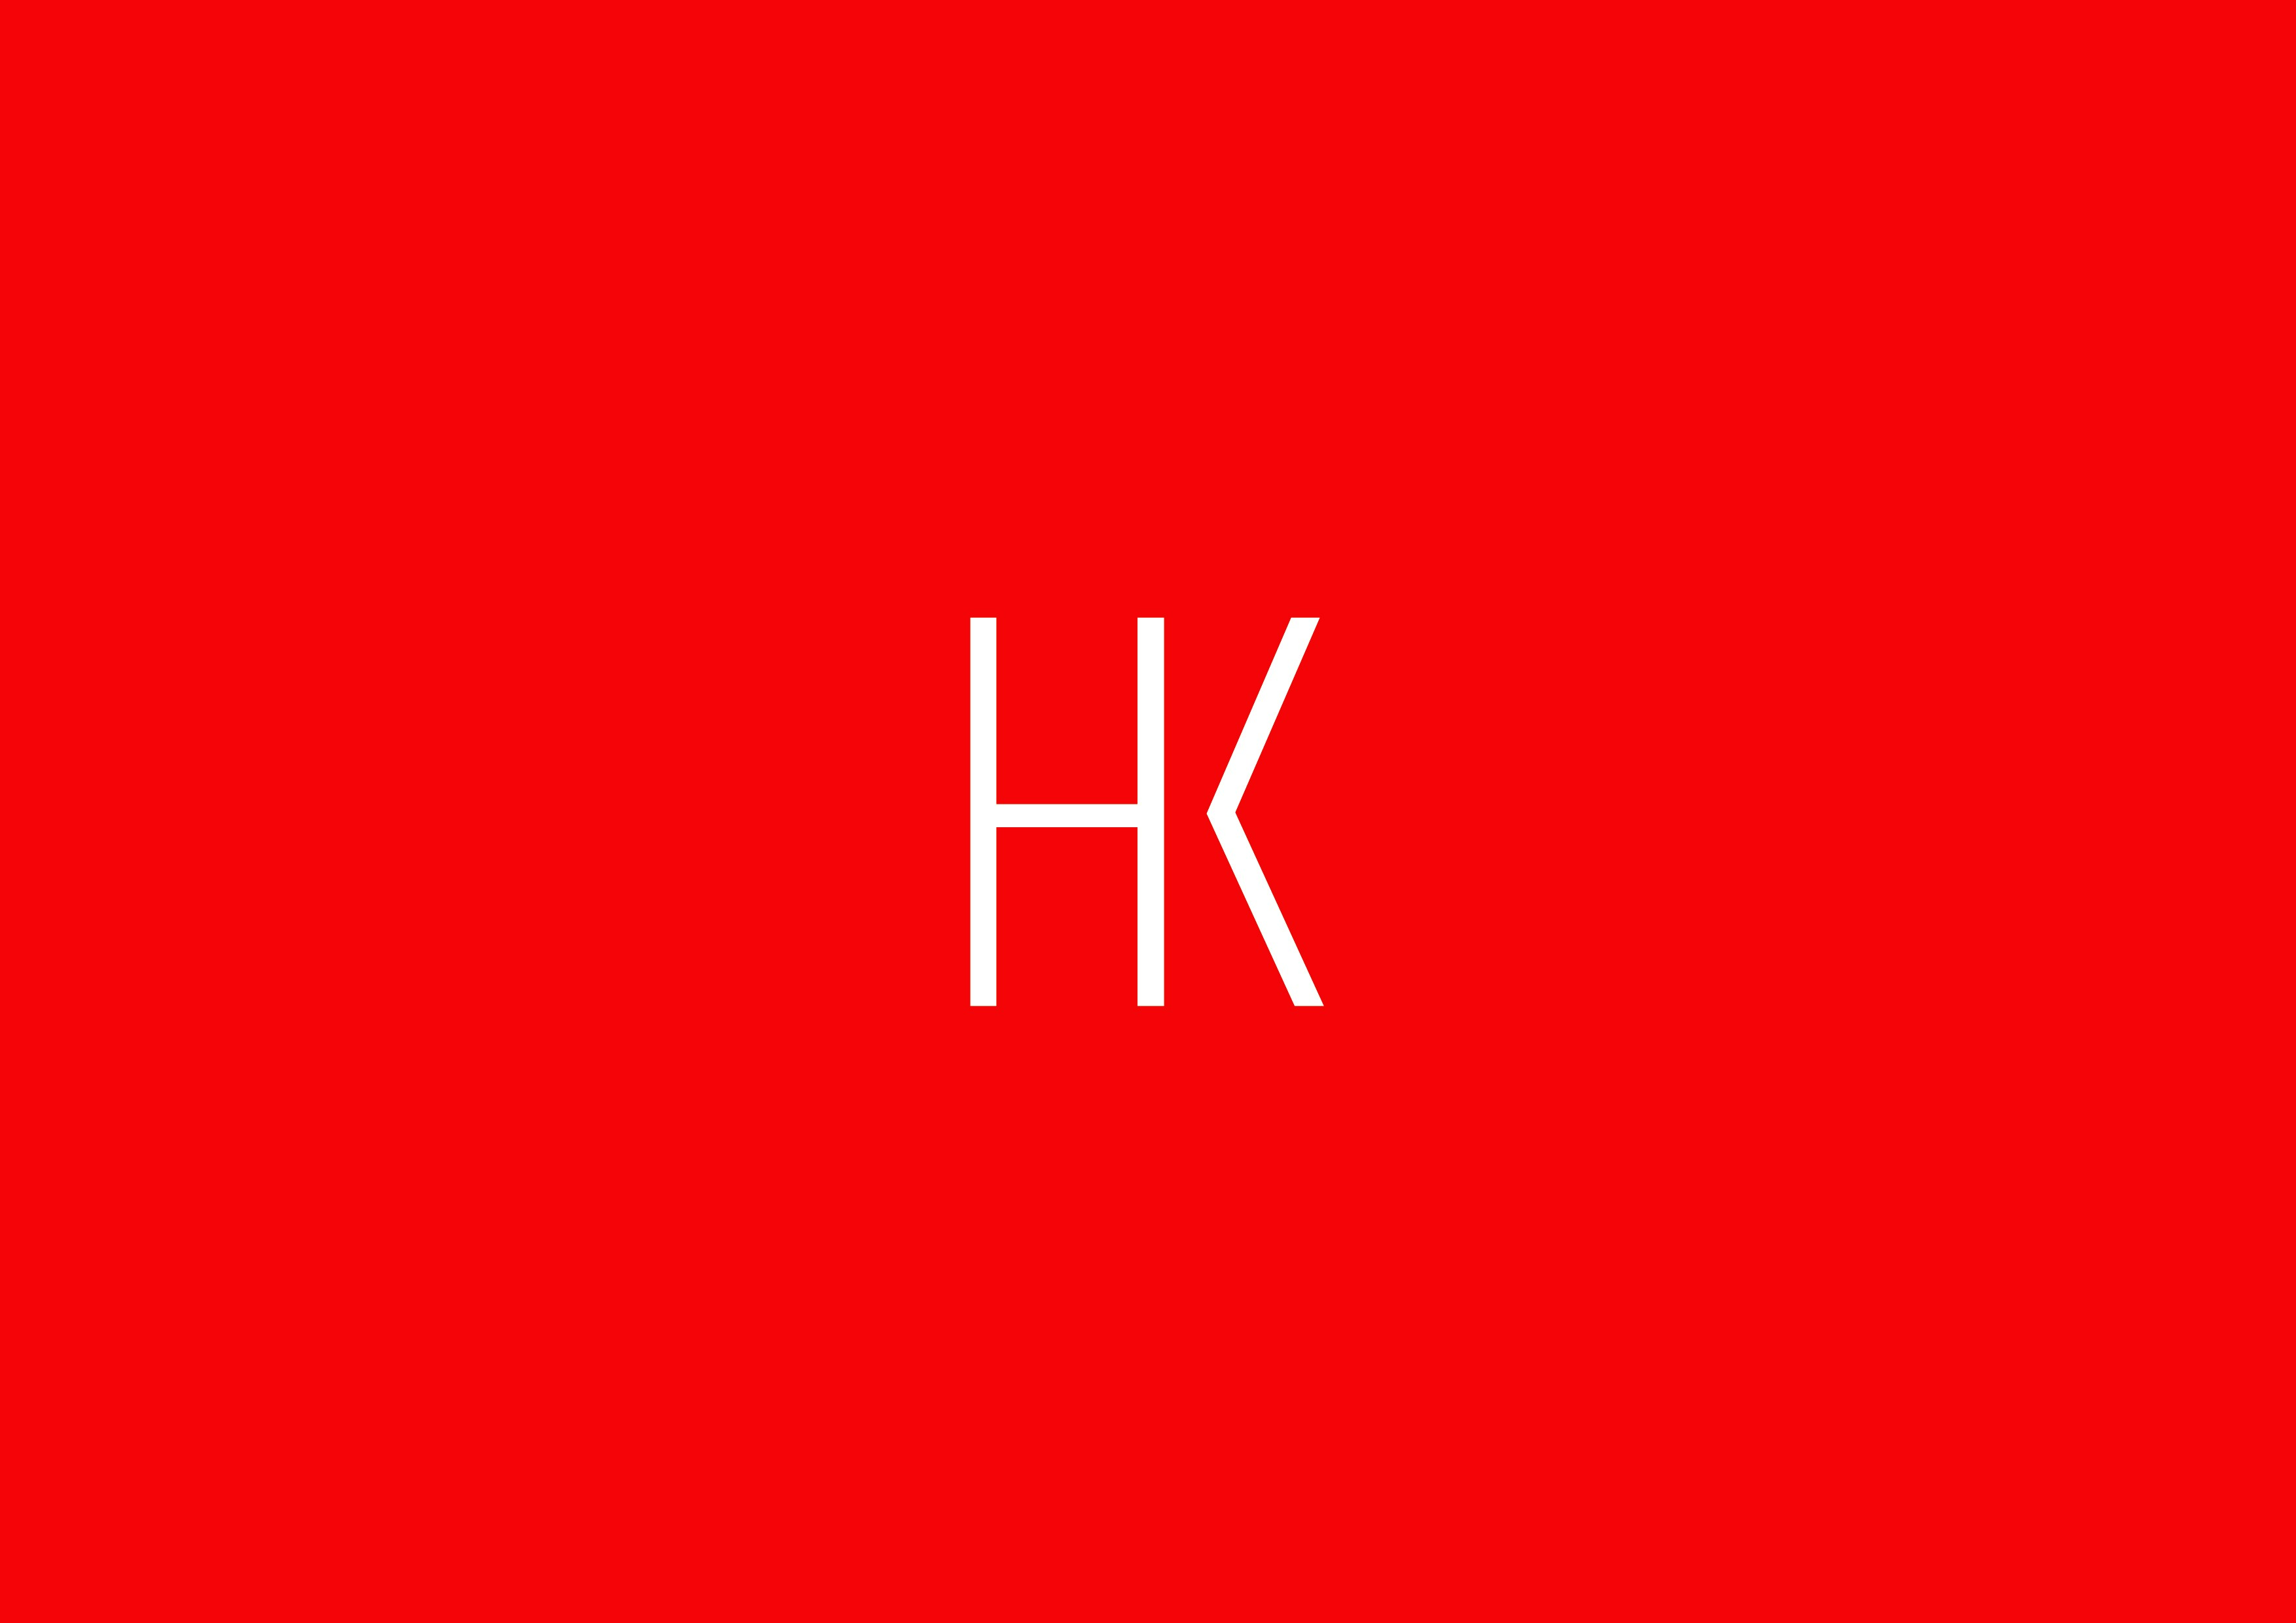 Initialen HK in weiß auf rotem Grund